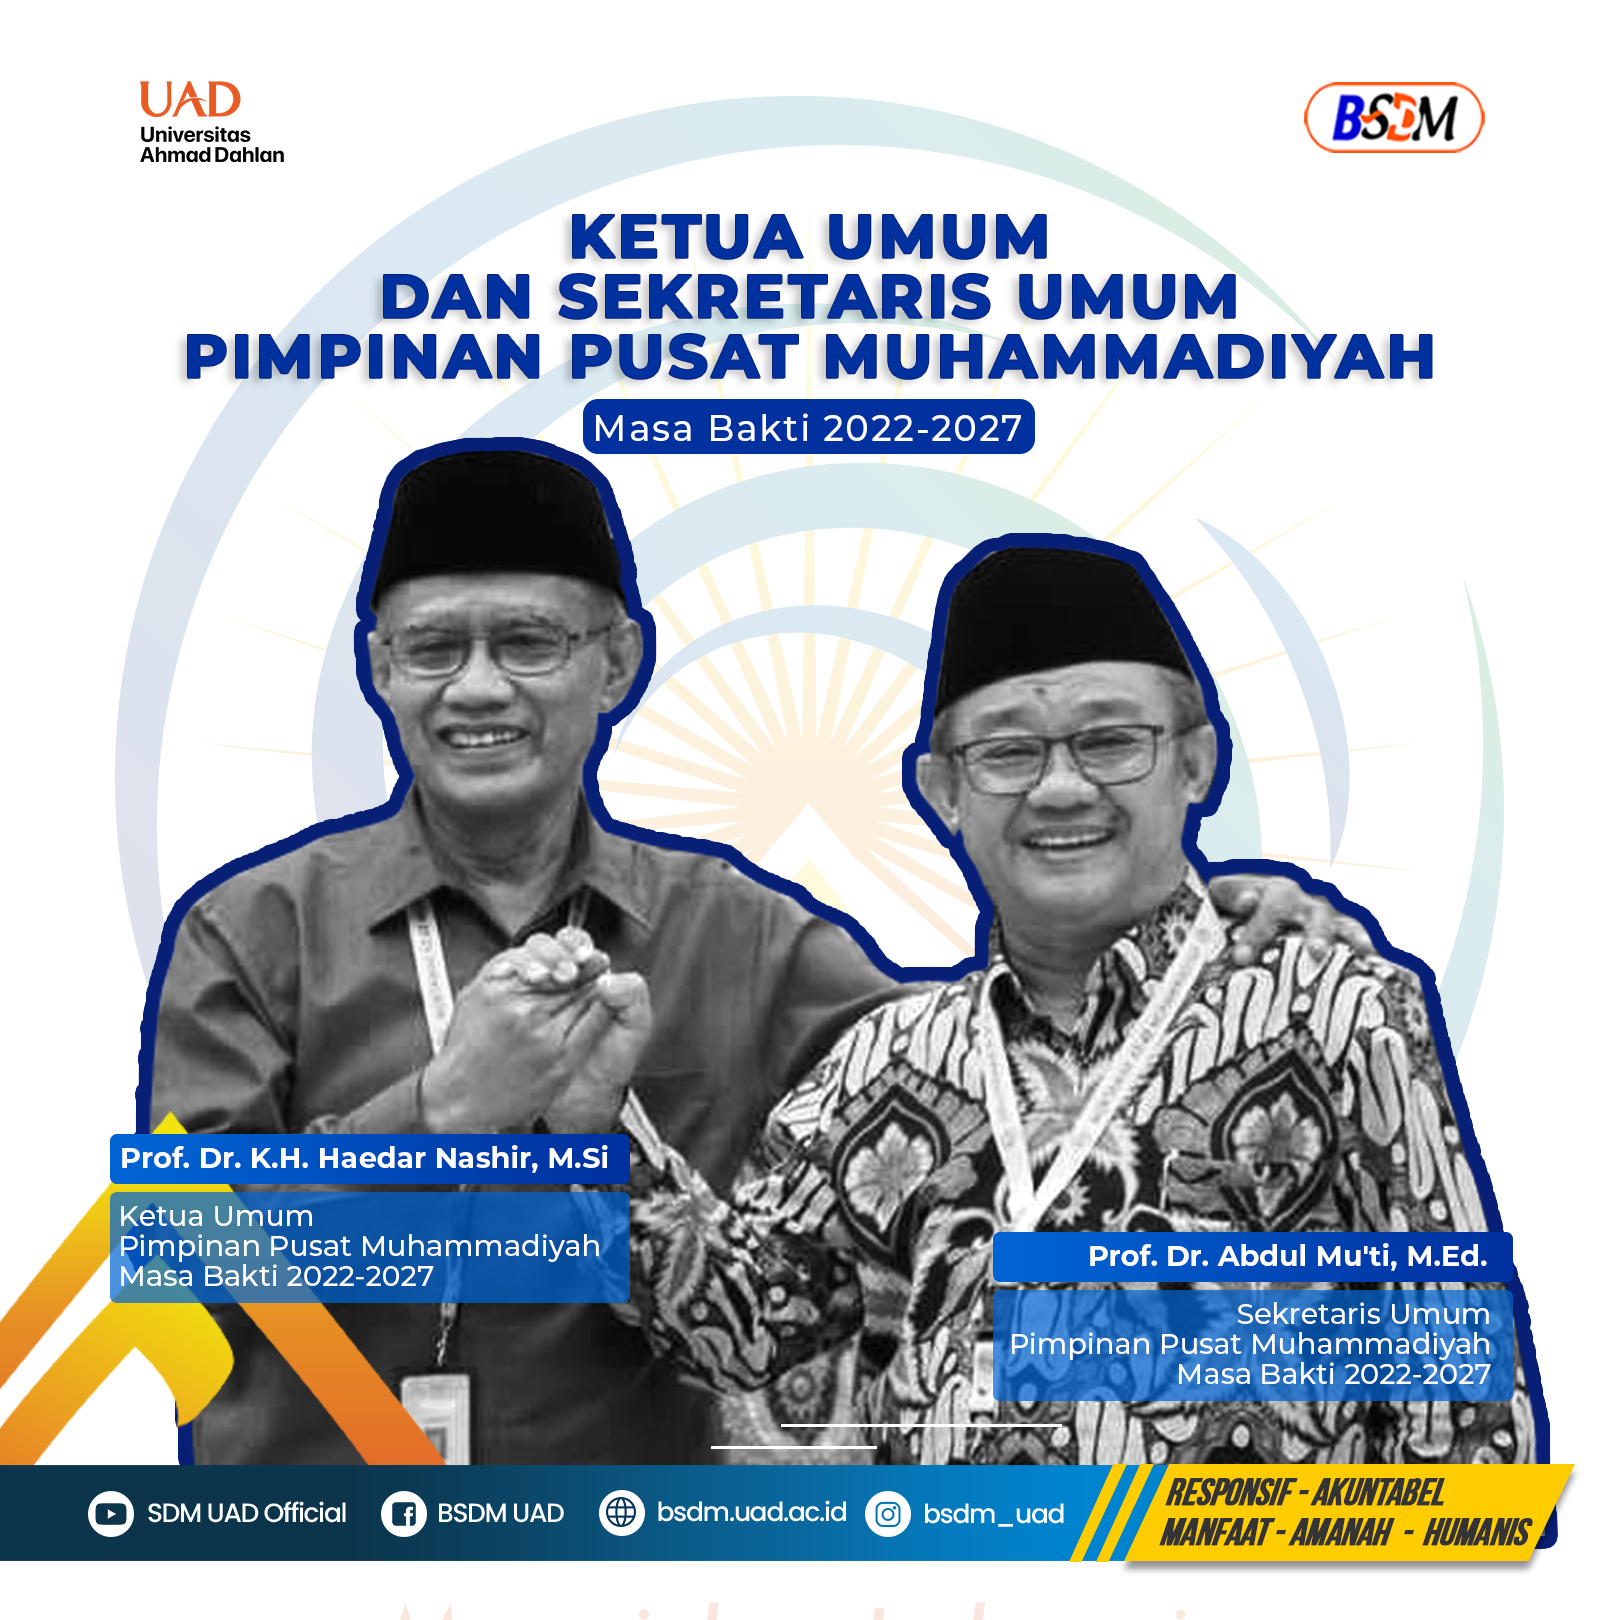 Selamat dan Sukses Atas Terpilihnya Ketua Umum dan Sekretaris Umum PP Muhammadiyah Masa Bakti 2022-2027